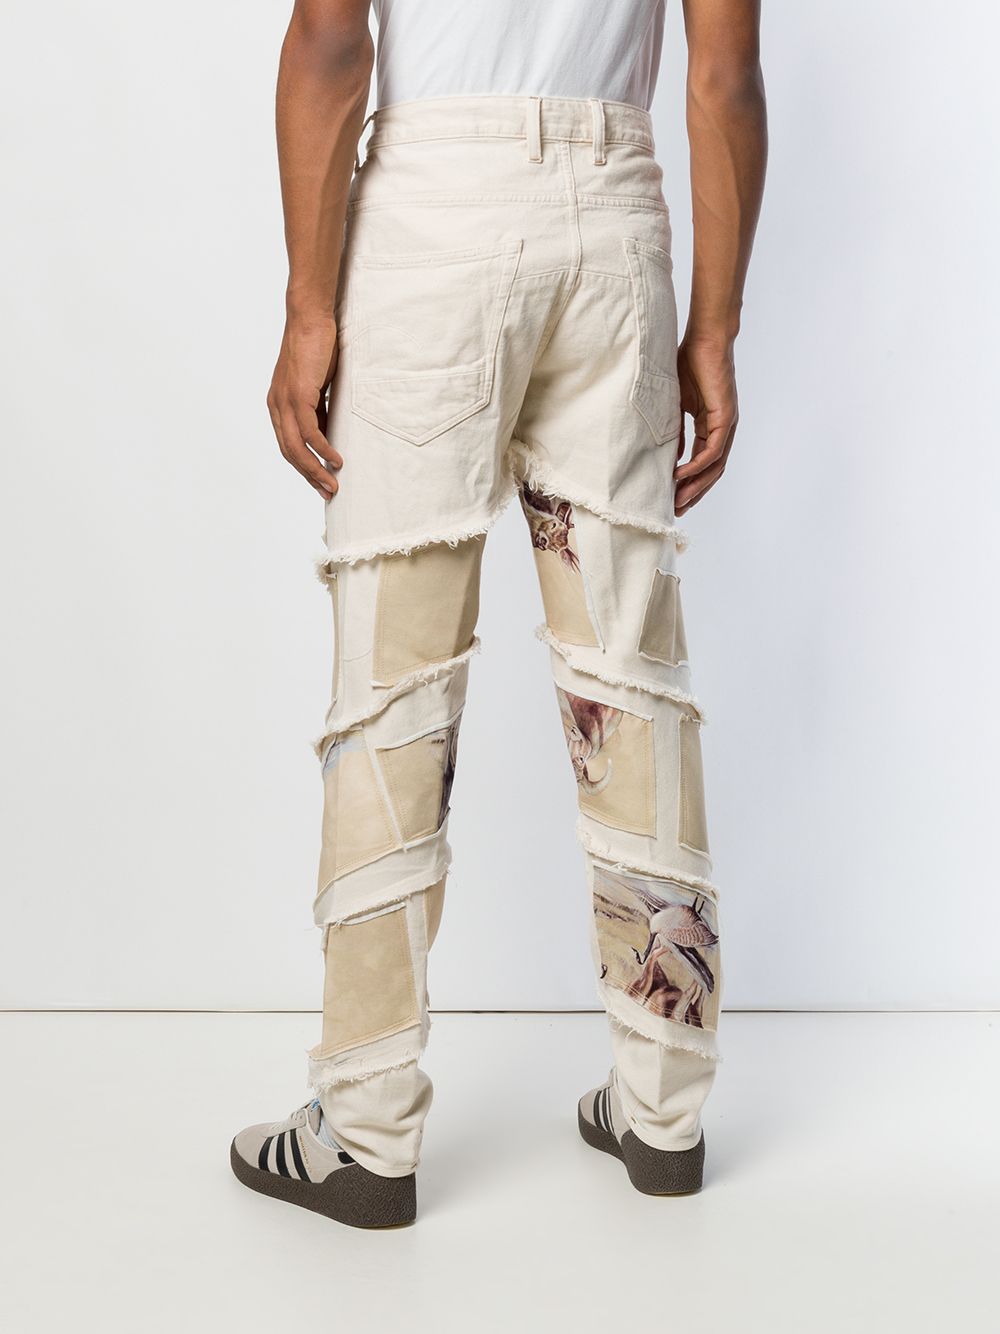 фото G-star raw research джинсы с принтом оленей